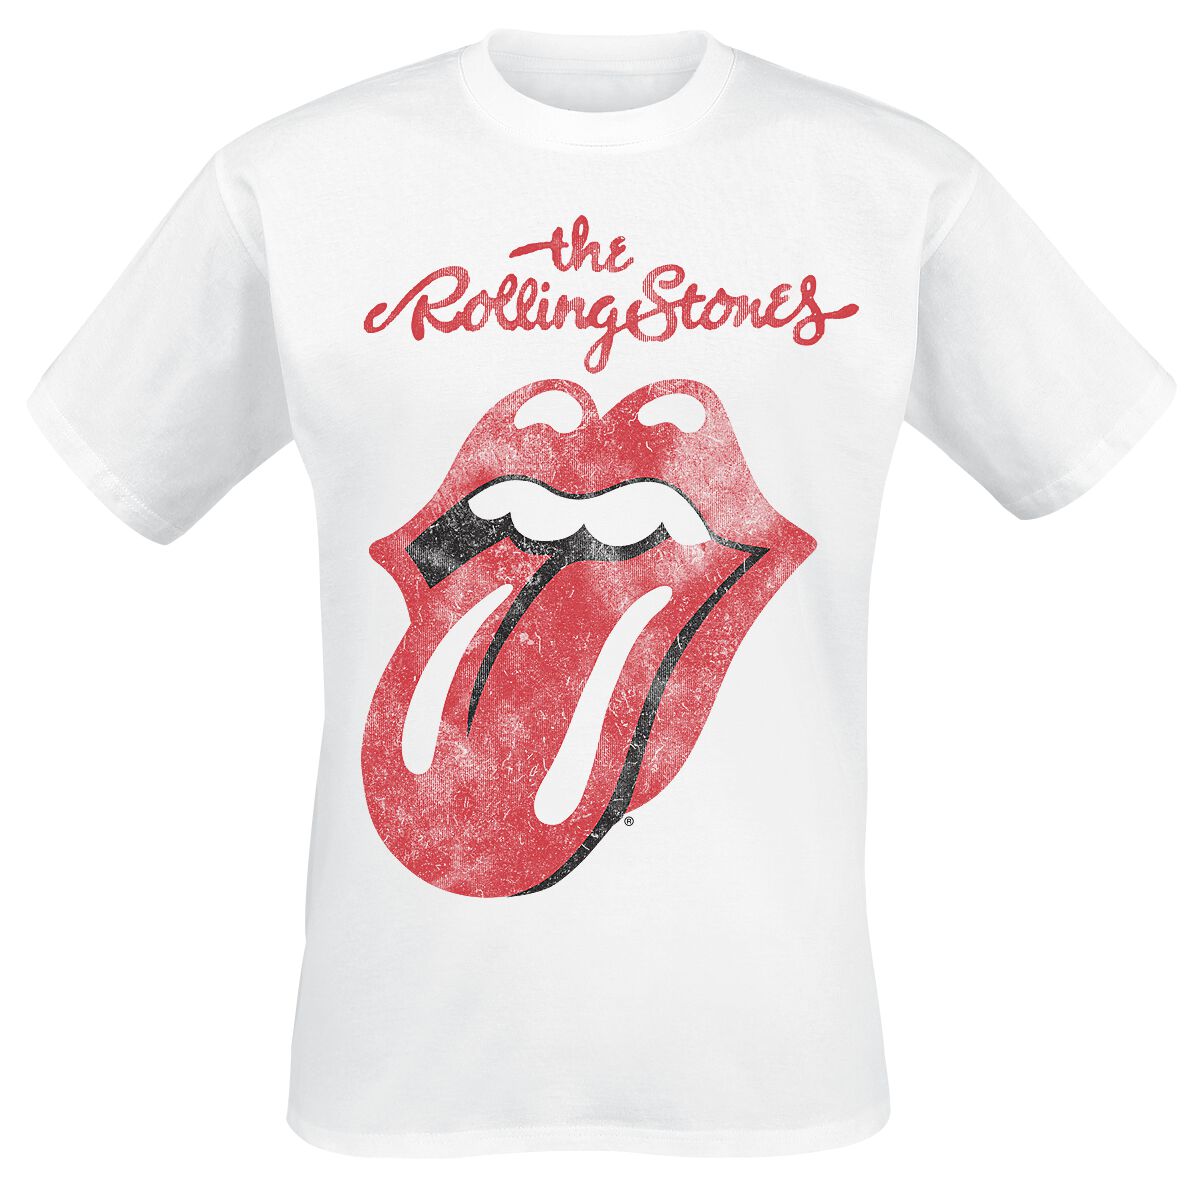 The Rolling Stones T-Shirt - Classic Tongue - S bis XXL - für Männer - Größe S - weiß  - Lizenziertes Merchandise!